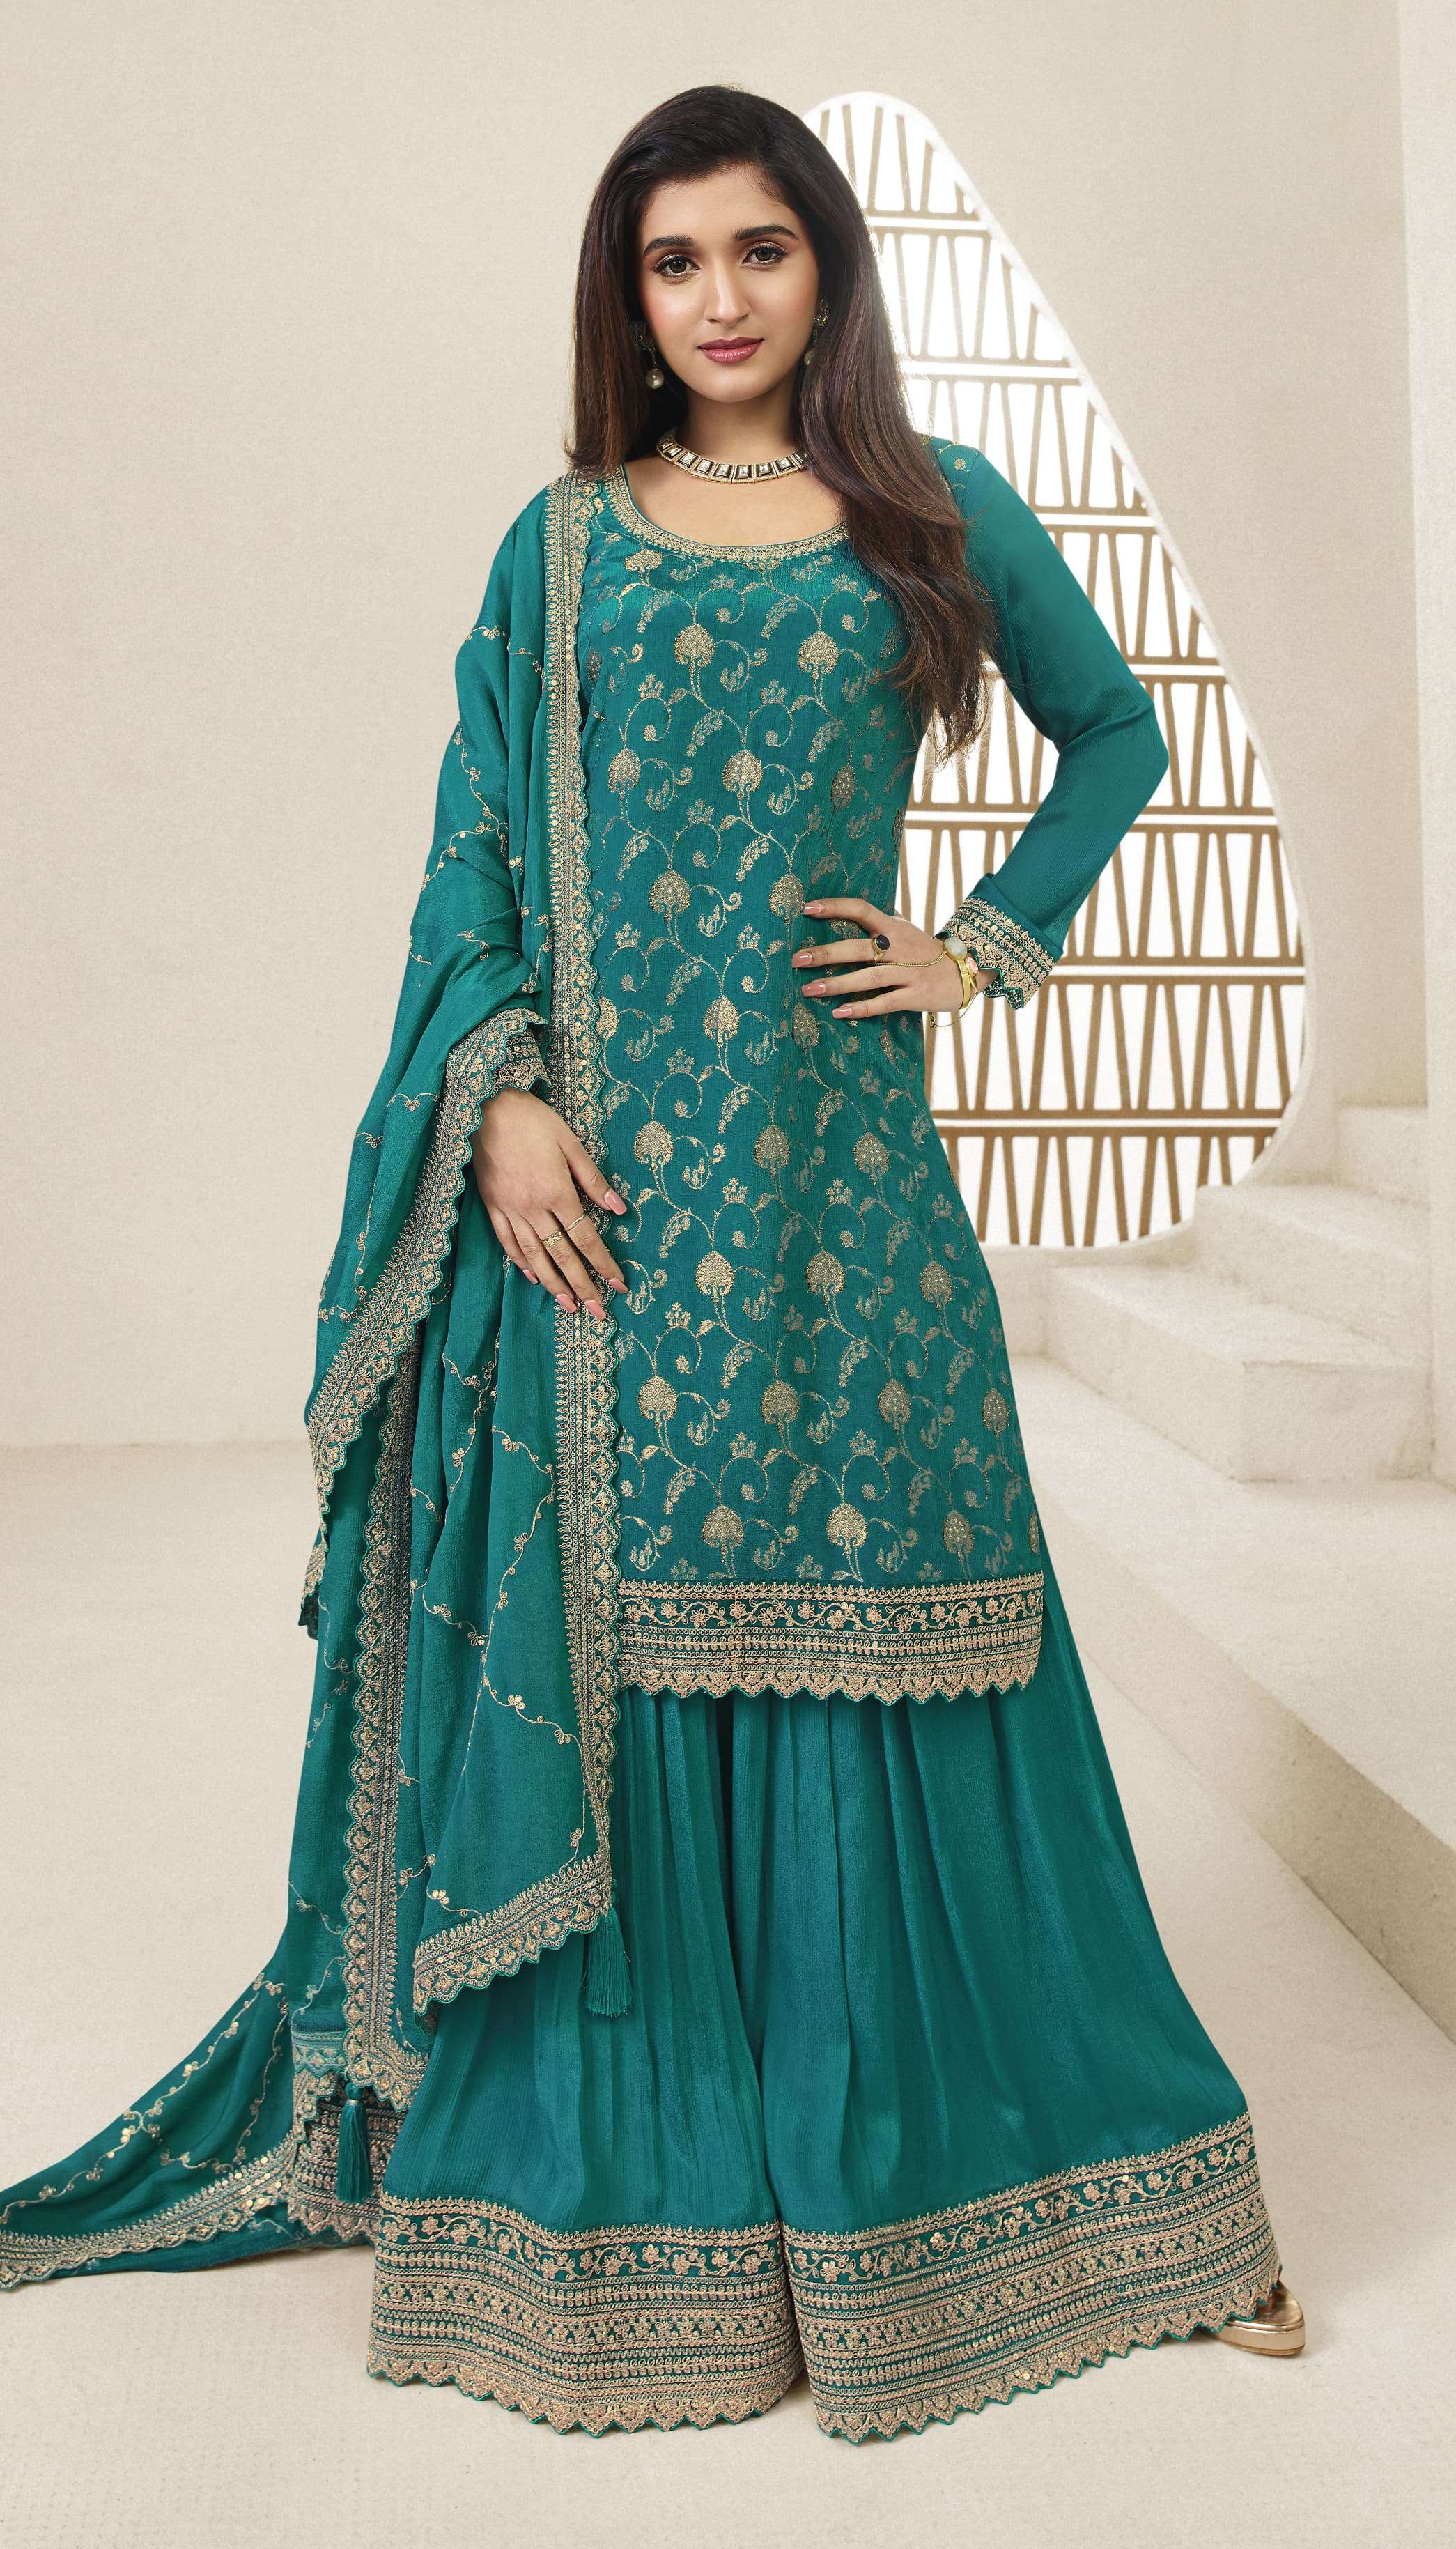 Kuleesh Buy Vinay Fashion Online Wholesaler Latest Collection Unstitched Salwar Suit Set